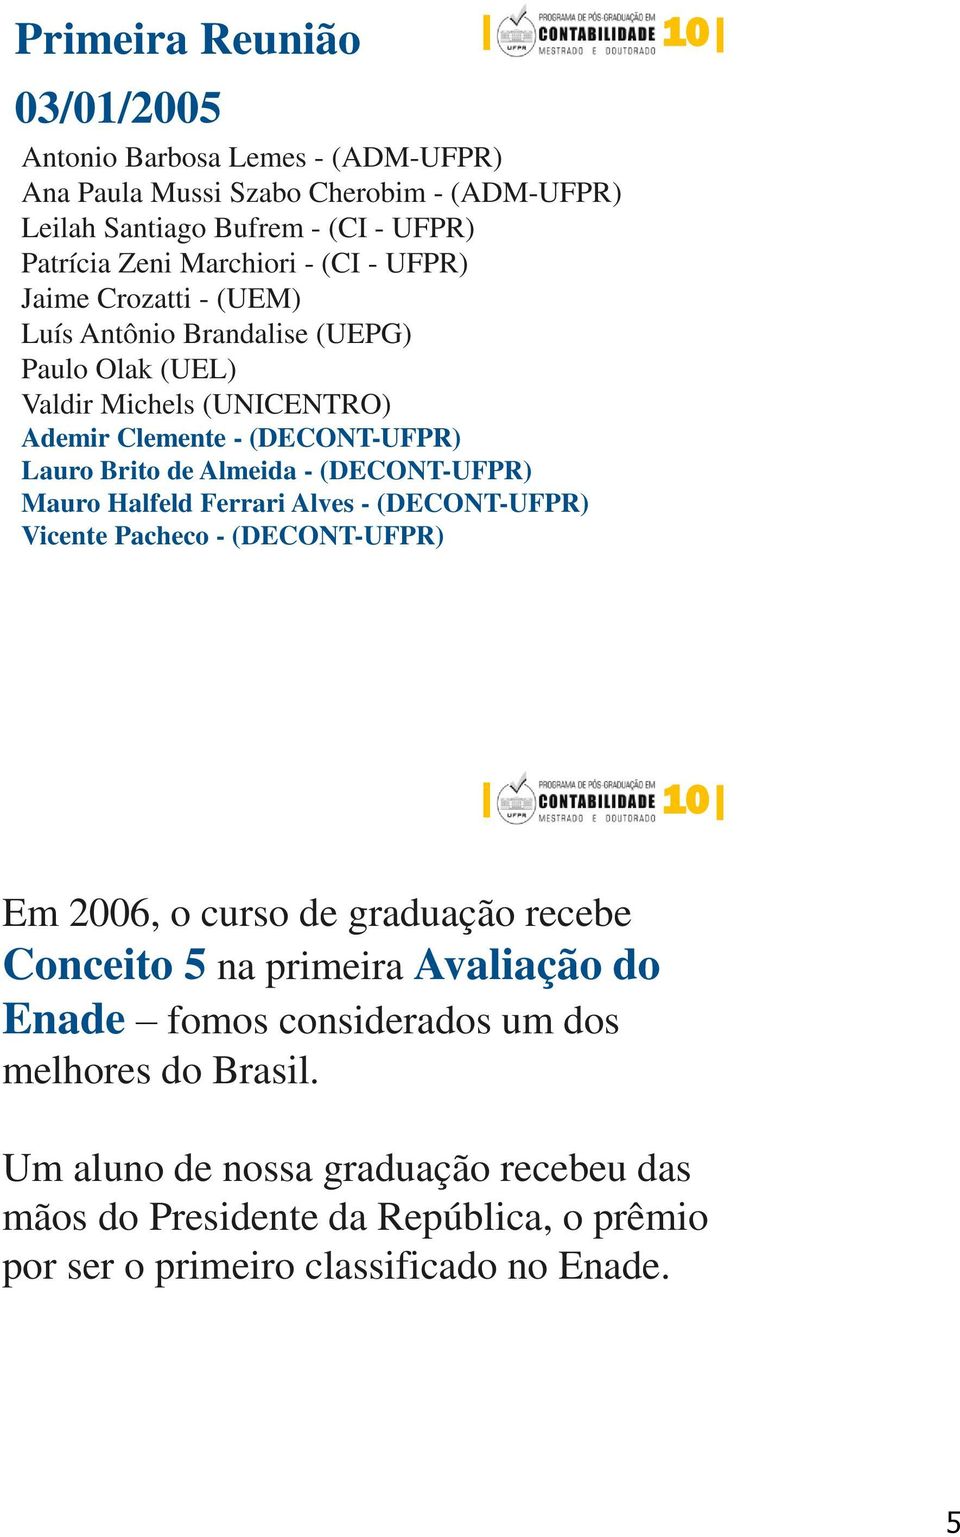 (DECONT-UFPR) Mauro Halfeld Ferrari Alves - (DECONT-UFPR) Vicente Pacheco - (DECONT-UFPR) Em 2006, o curso de graduação recebe Conceito 5 na primeira Avaliação do Enade